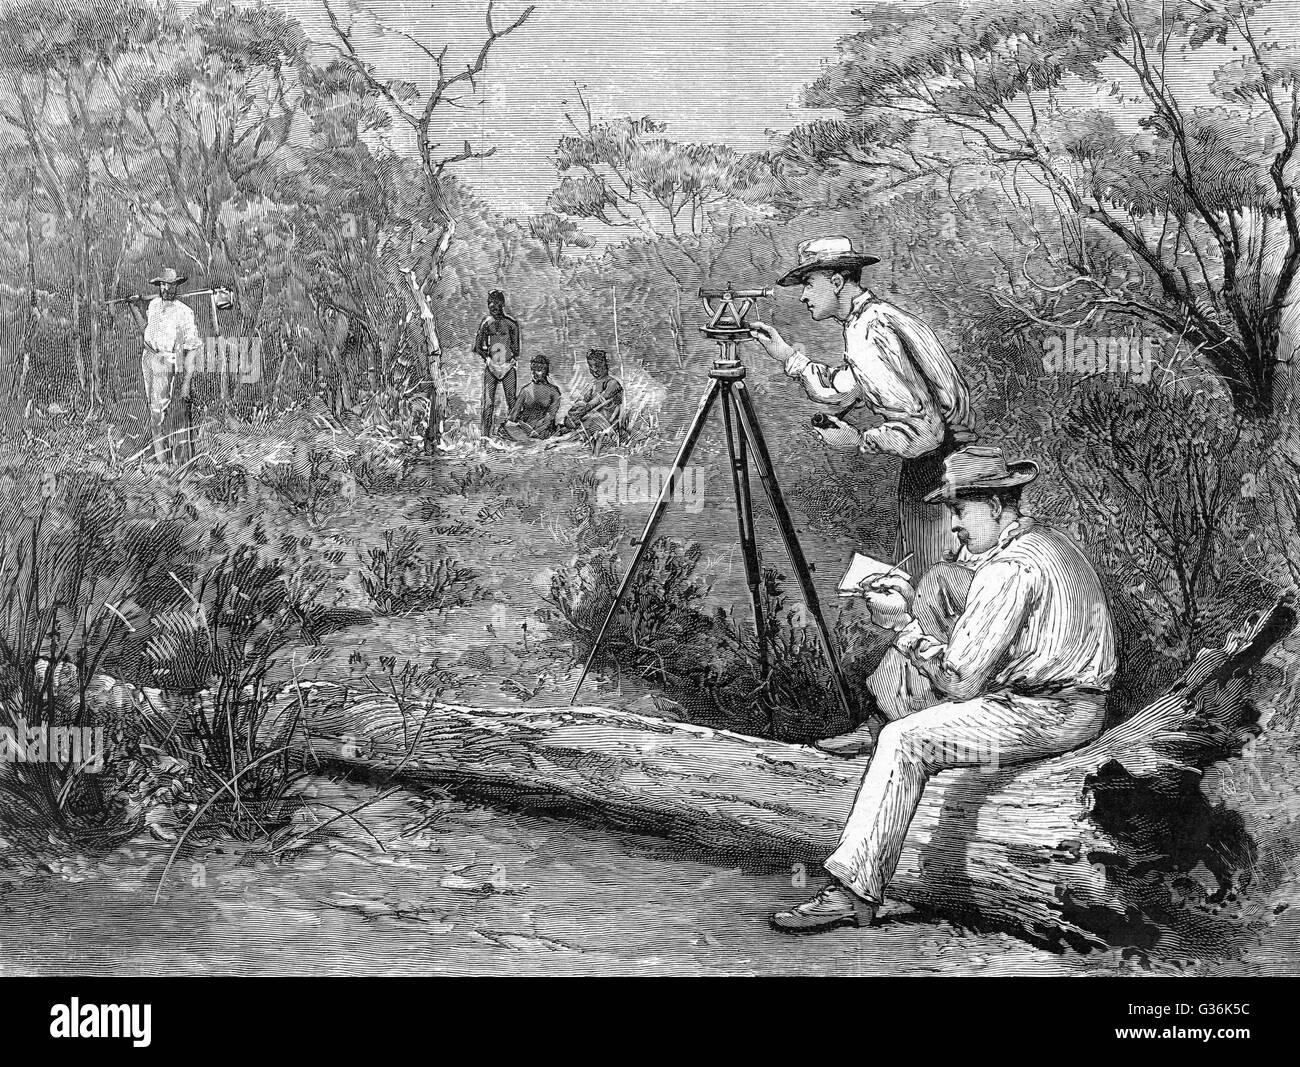 Indagini presso l'Hampton pianure, Australia occidentale data: 1895 Foto Stock